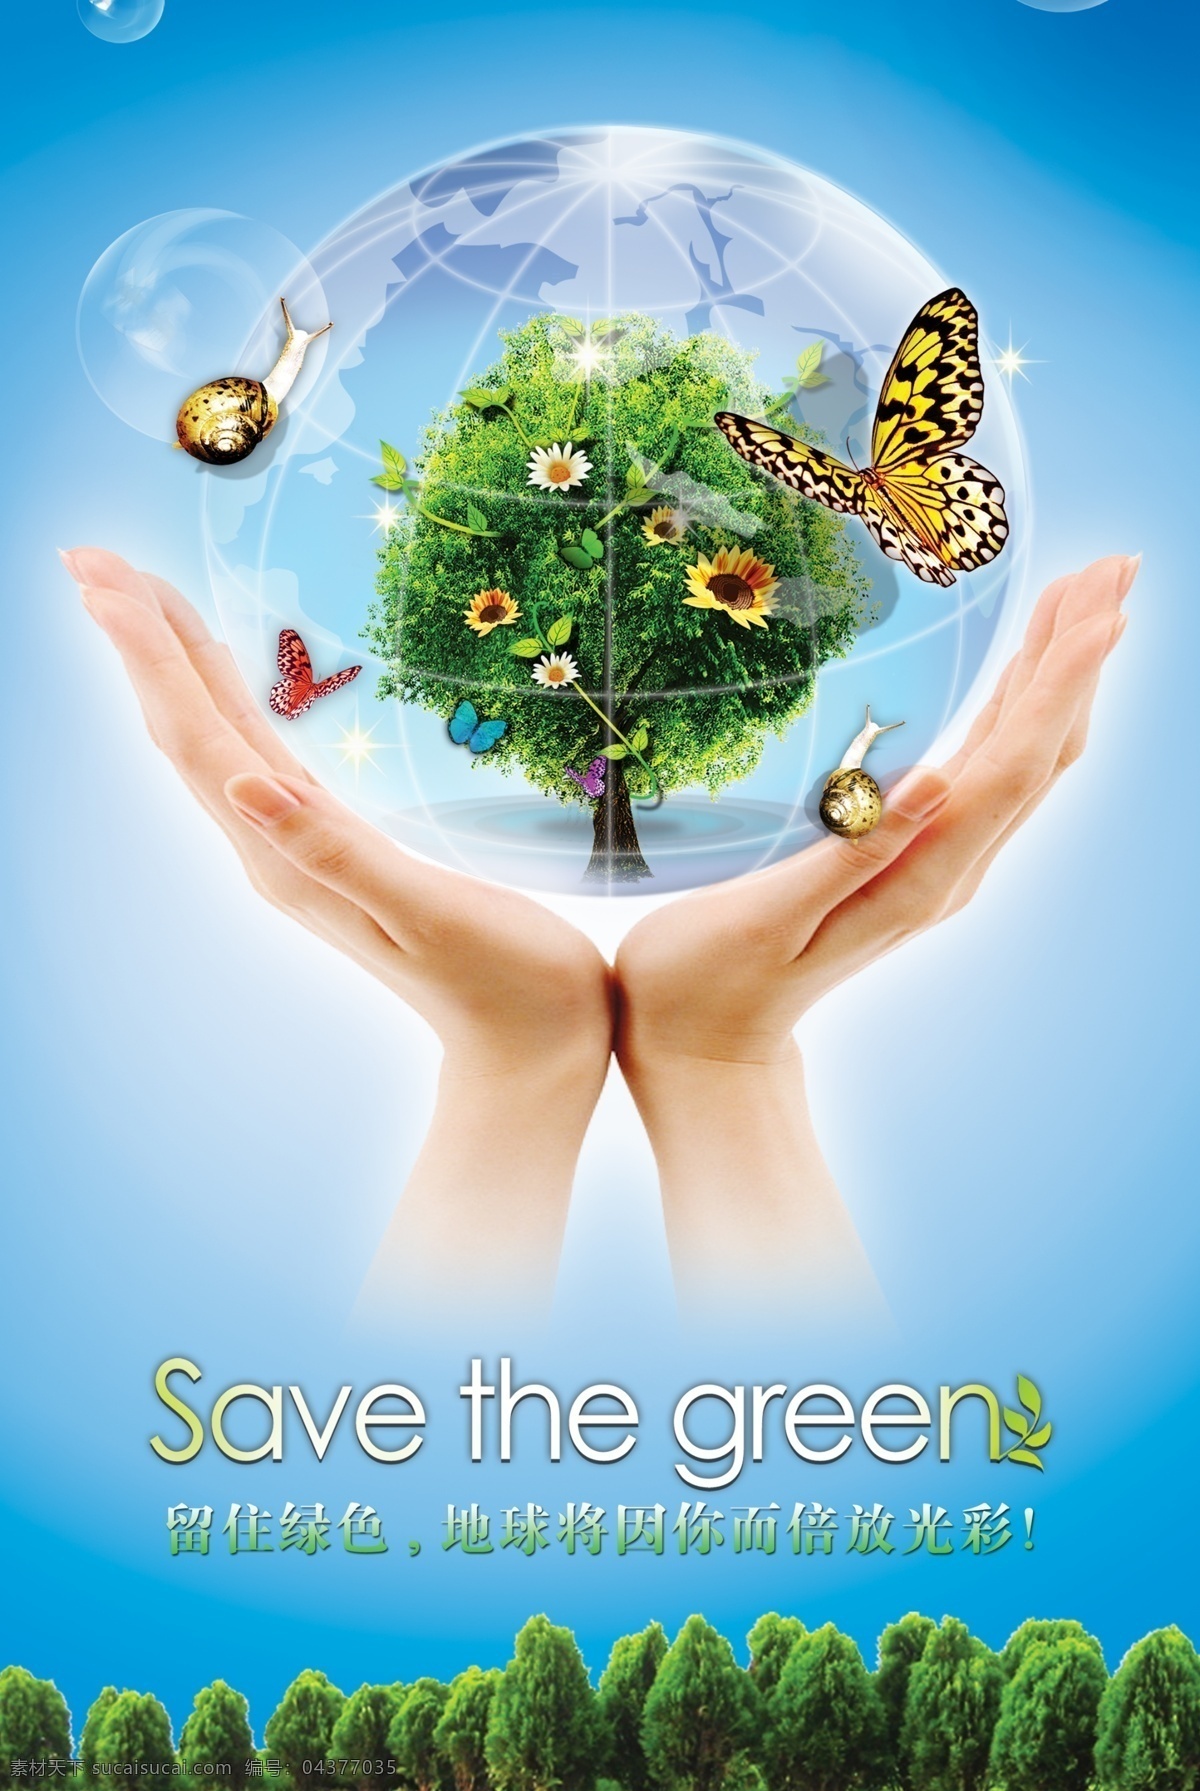 爱护环境图片 海报 环保海报 环保标语 绿色环保 爱护环境 手托 托举 树 蝴蝶 蓝天 蜗牛 分层